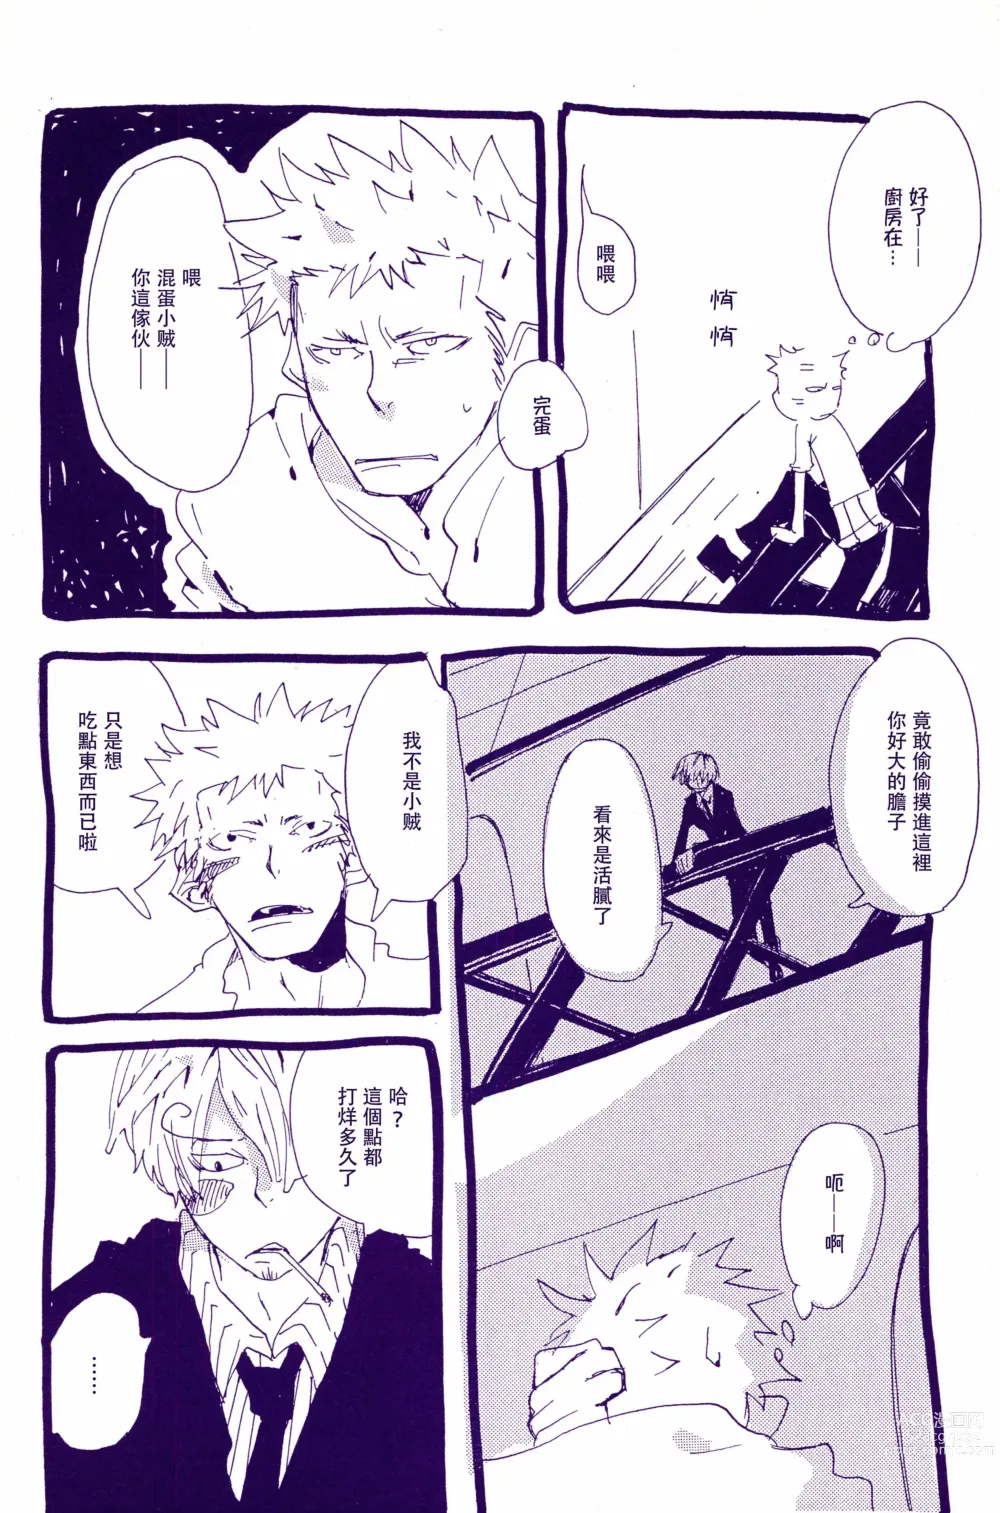 Page 3 of doujinshi 在暴风雨的夜晚 1